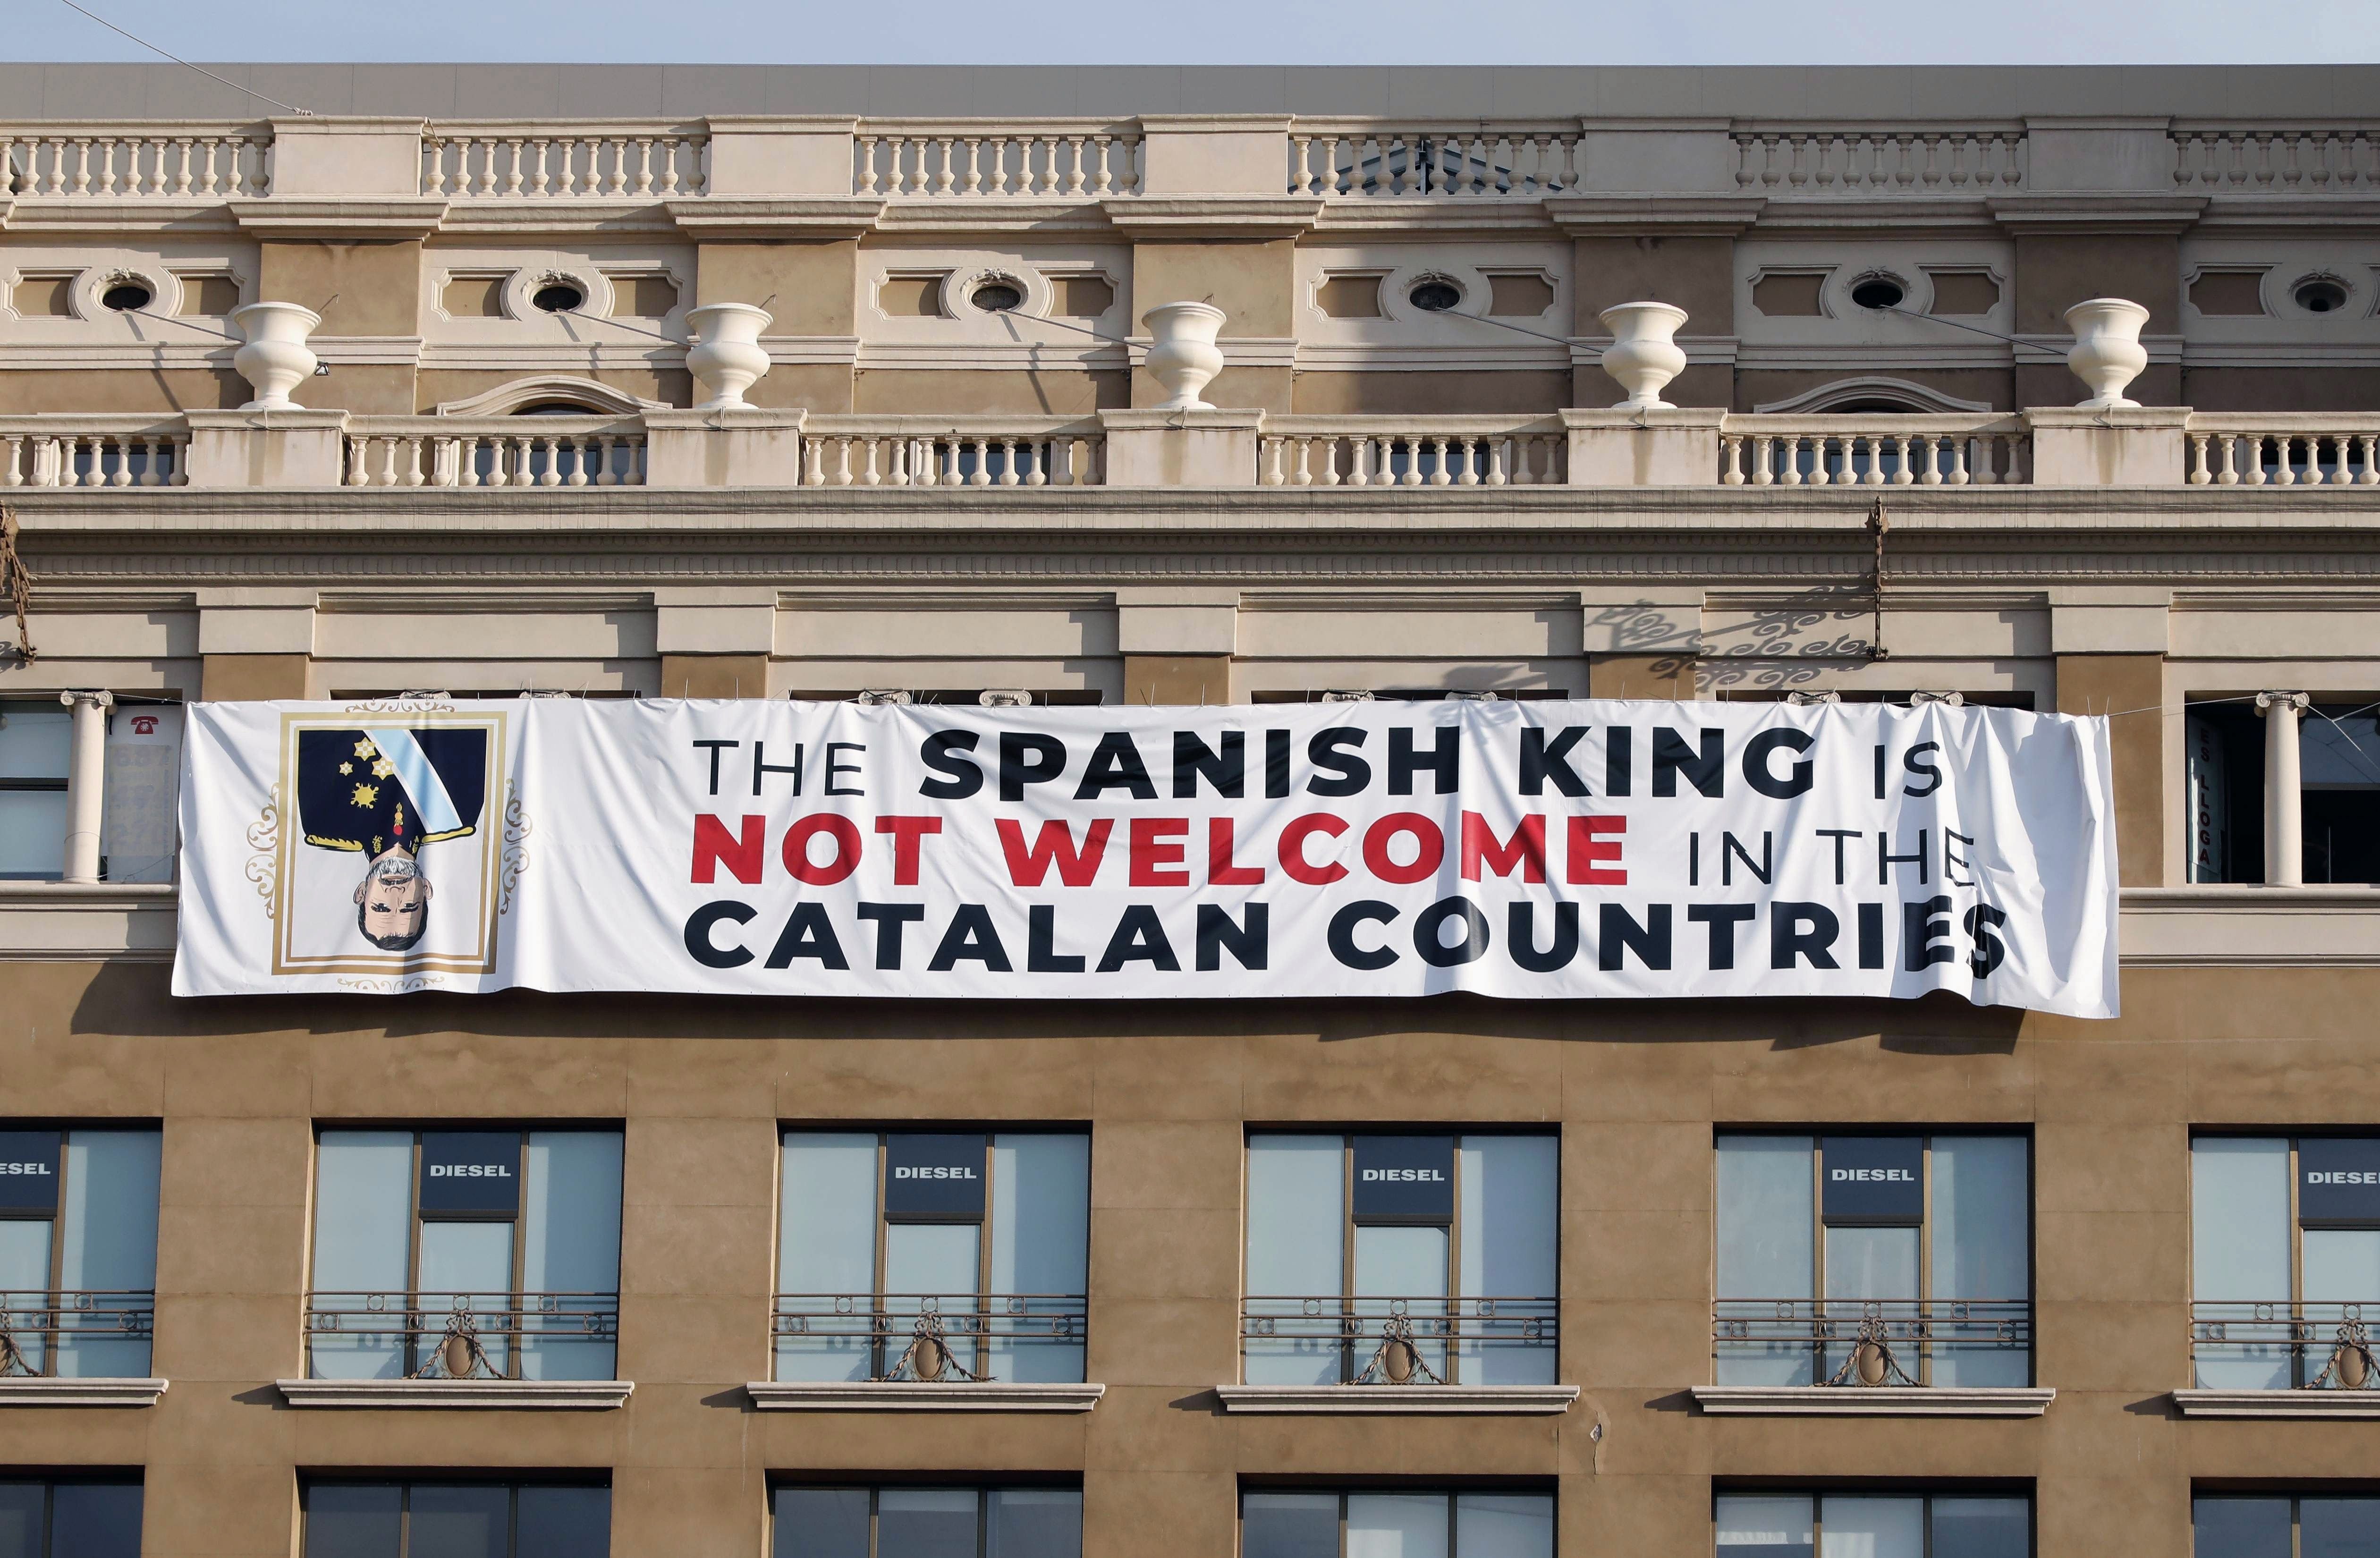 La pancarta contra el Rey encuentra un lugar en los medios internacionales